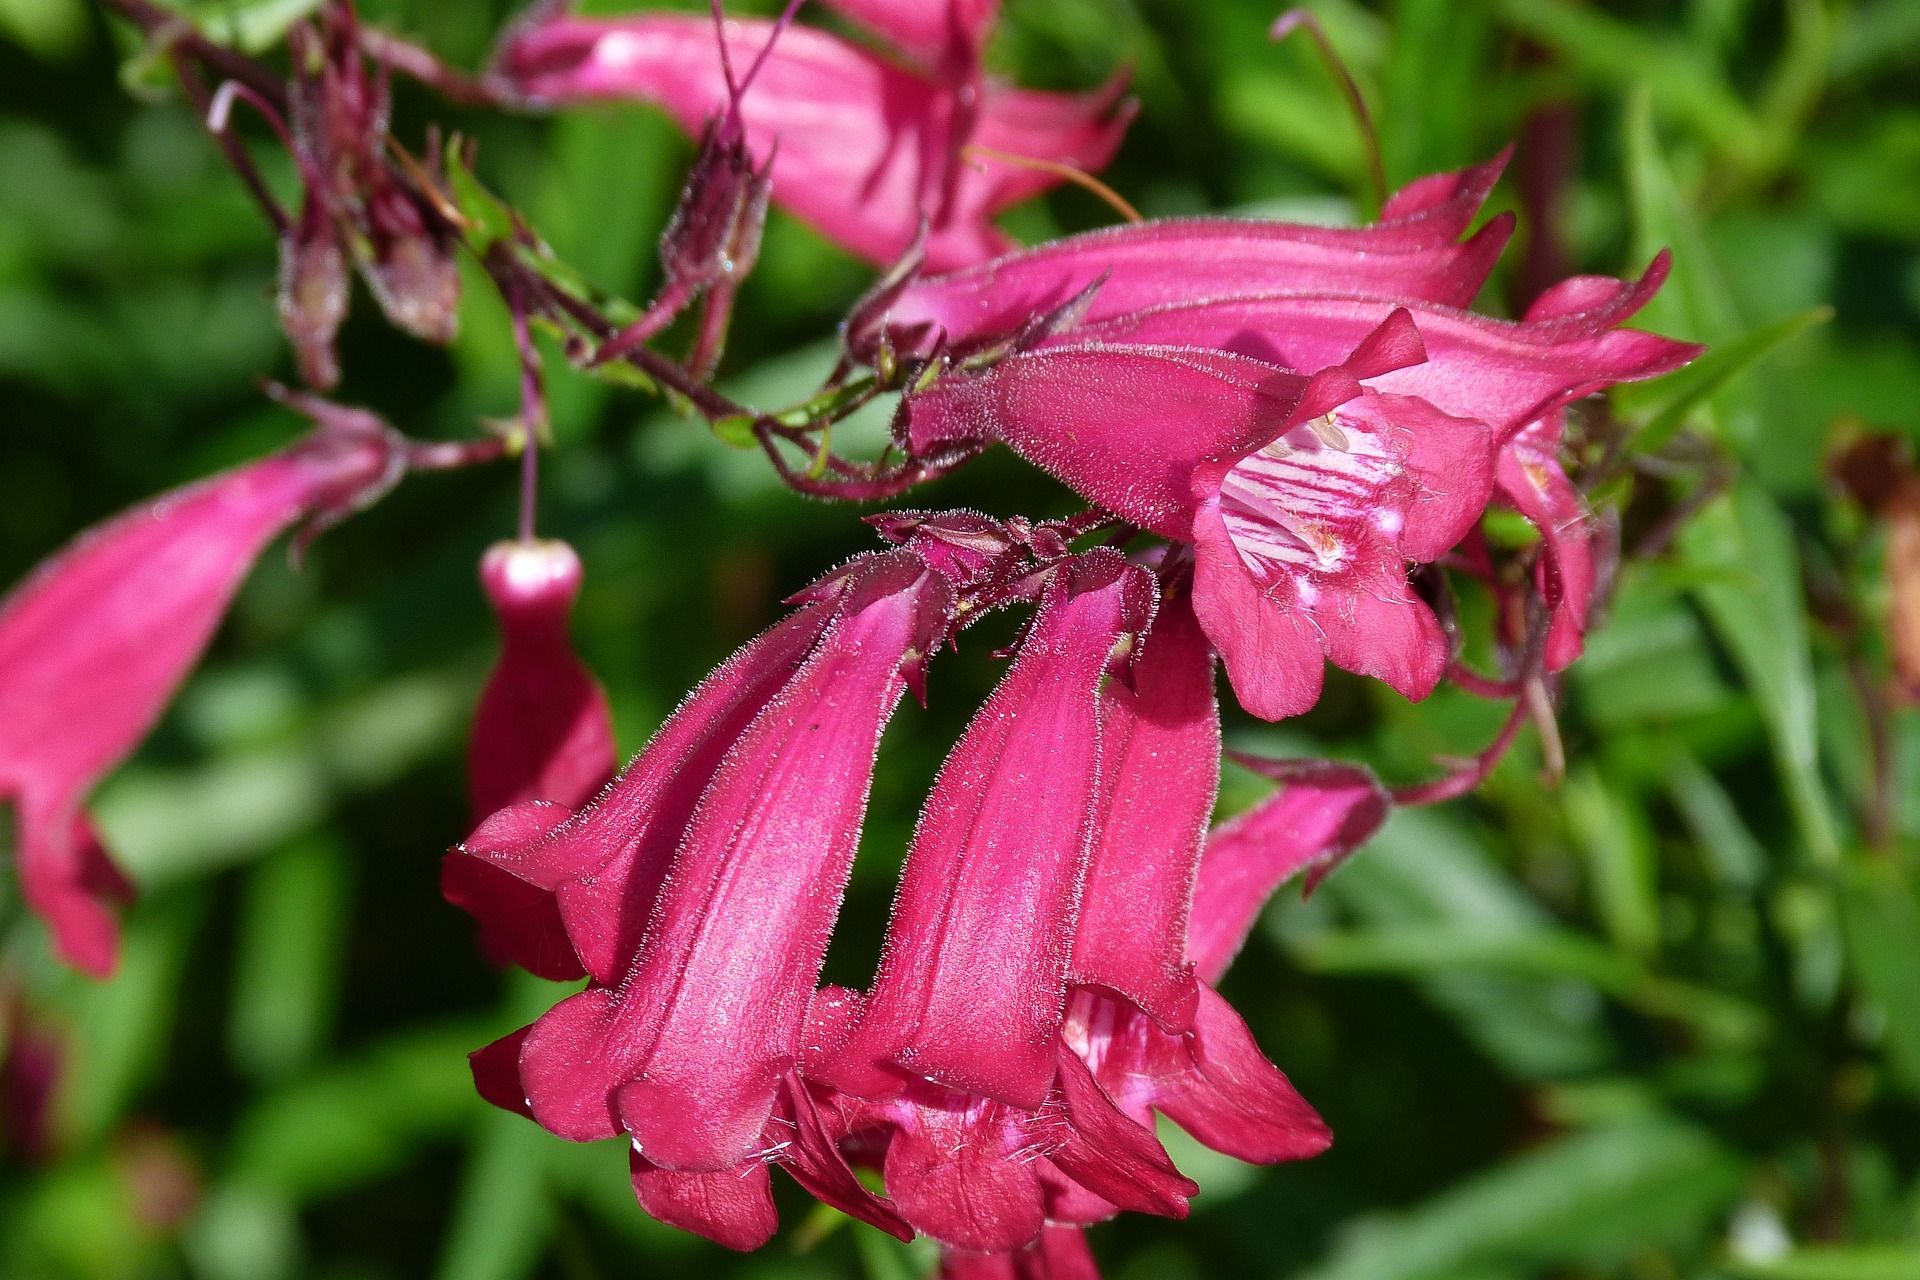 Beardtongue nectar plant